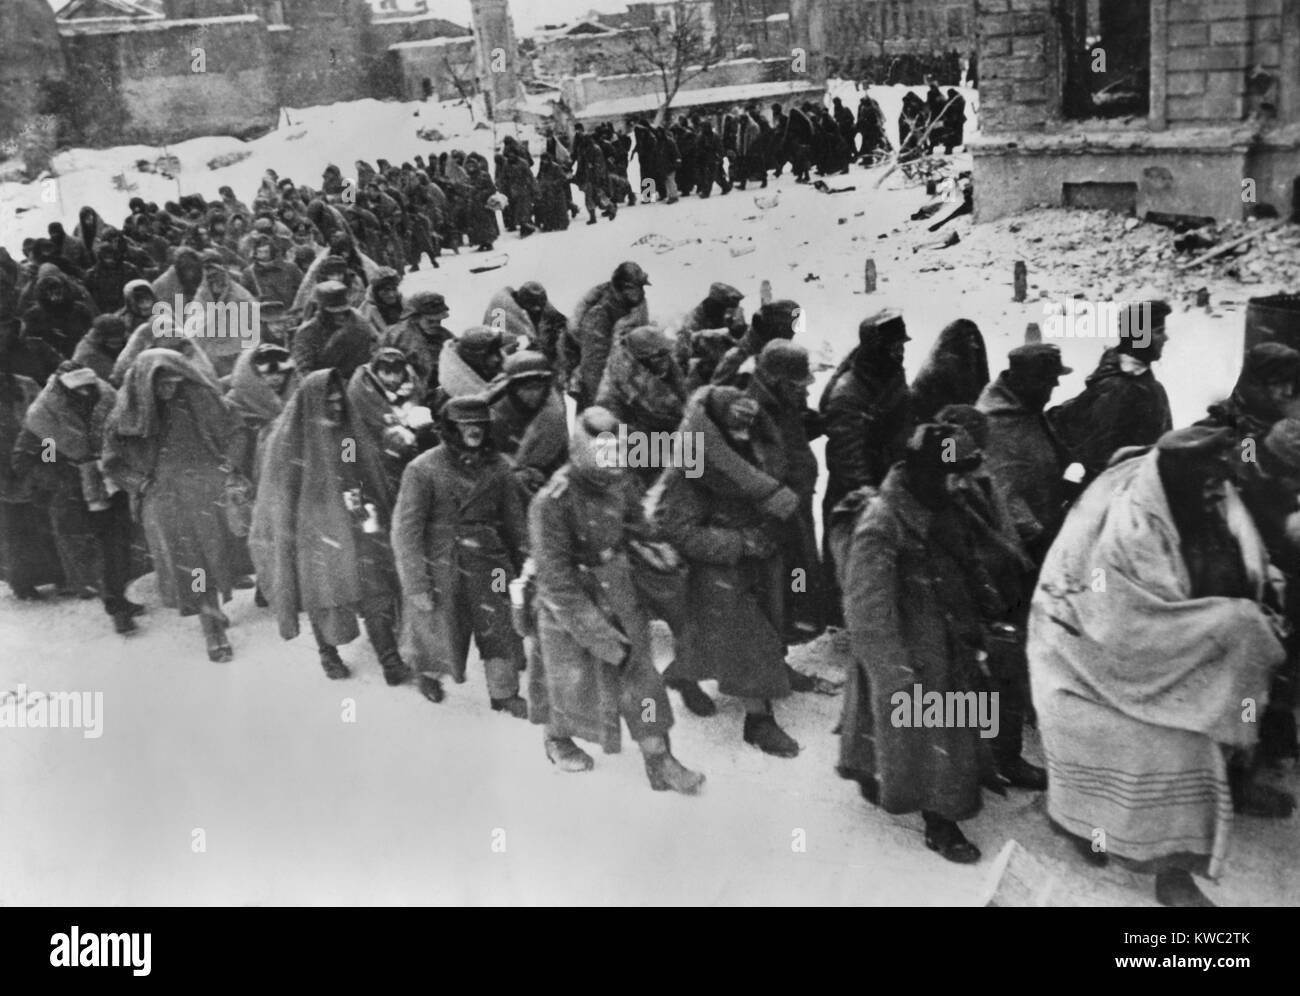 Deutsche Kriegsgefangene März durch die verschneiten Straßen von zerschlagenen Stalingrad in Jan.-Feb. 1943. In Decken oder sonst irgendetwas Gewickelt aus dem Winter Wetter zu schützen, werden sie die Reste der 6. deutschen Armee zerstört. Der 107,800 Soldaten gefangen genommen, nur 6000 bekannt waren, ihre Gefangenschaft zu überleben. Weltkrieg 2 (BSLOC 2015 13 111) Stockfoto